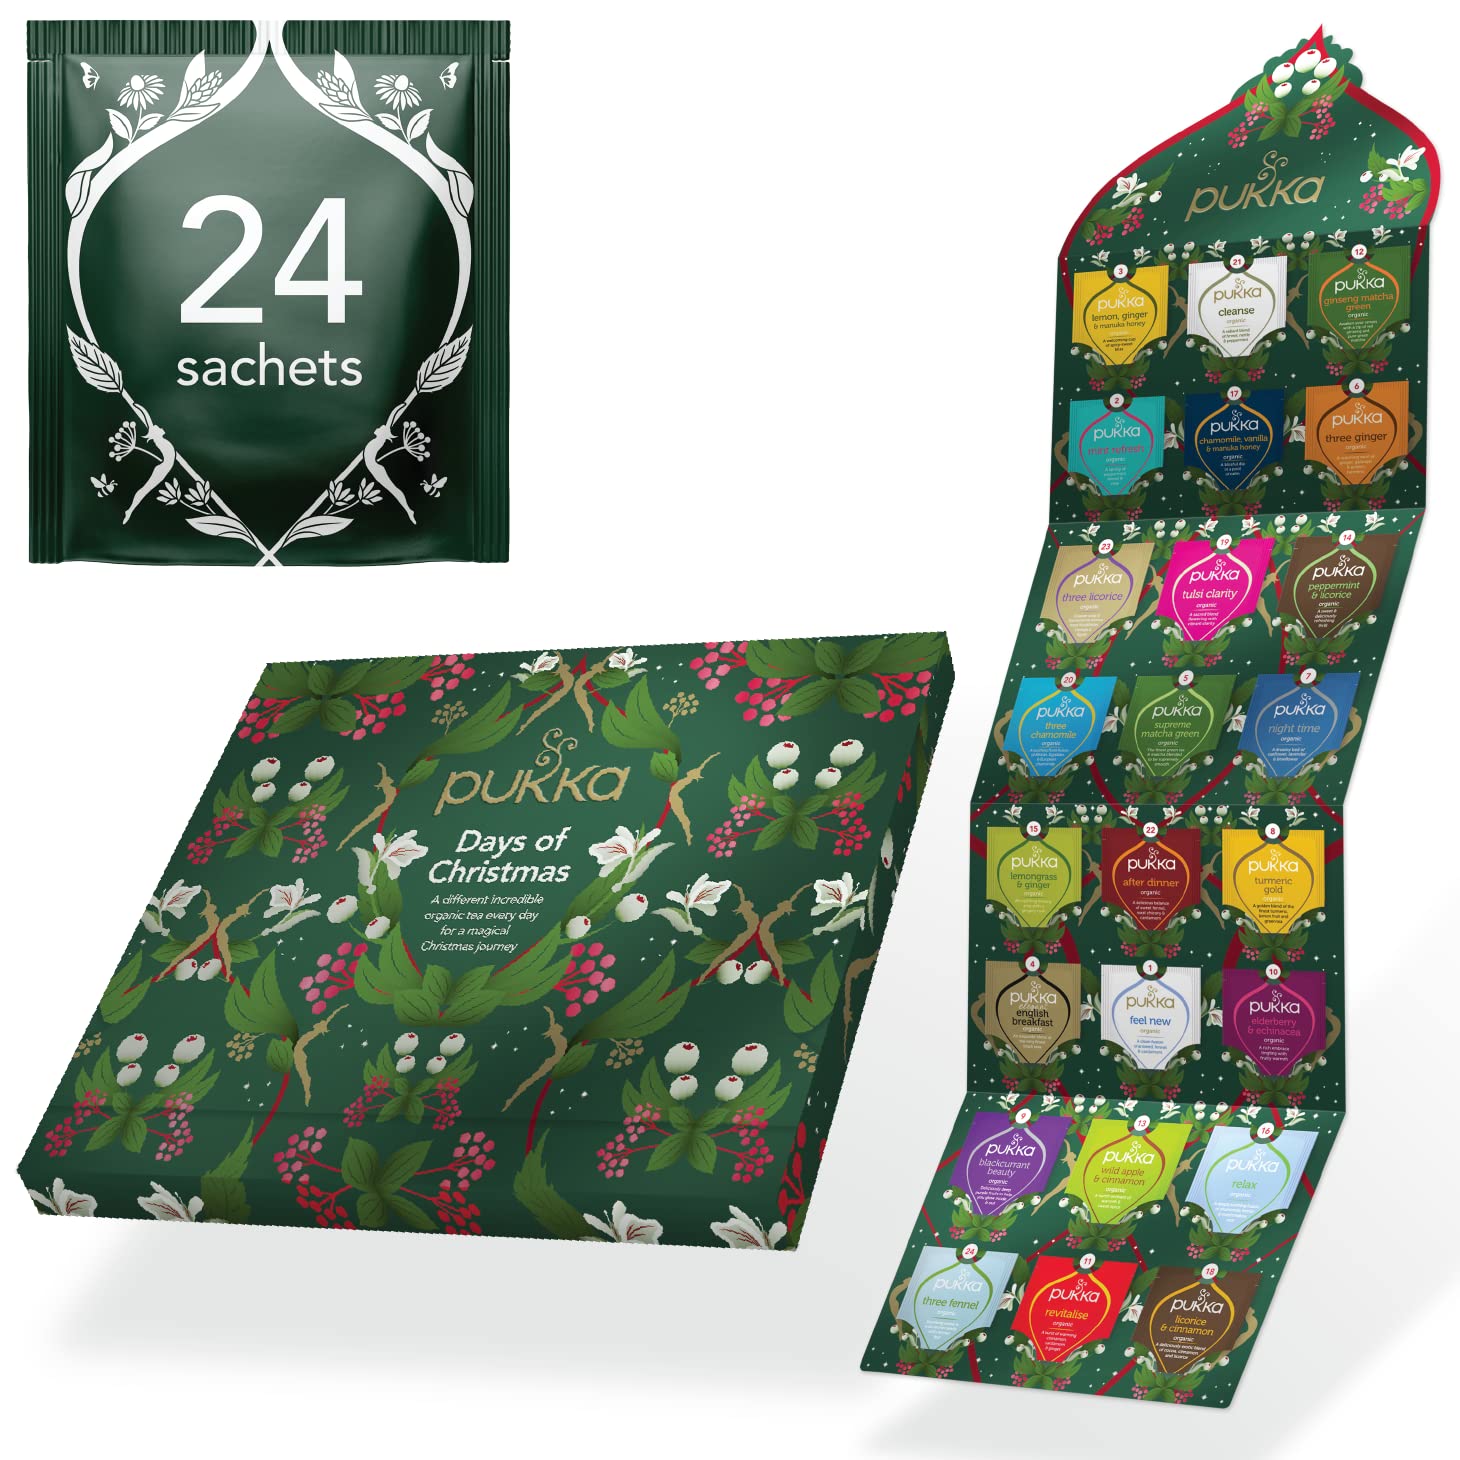 Pukka ティーバッグ クリスマス アドベント カレンダー オーガニック ハーブティ 24袋 パッカ 紅茶 お茶 ギフト